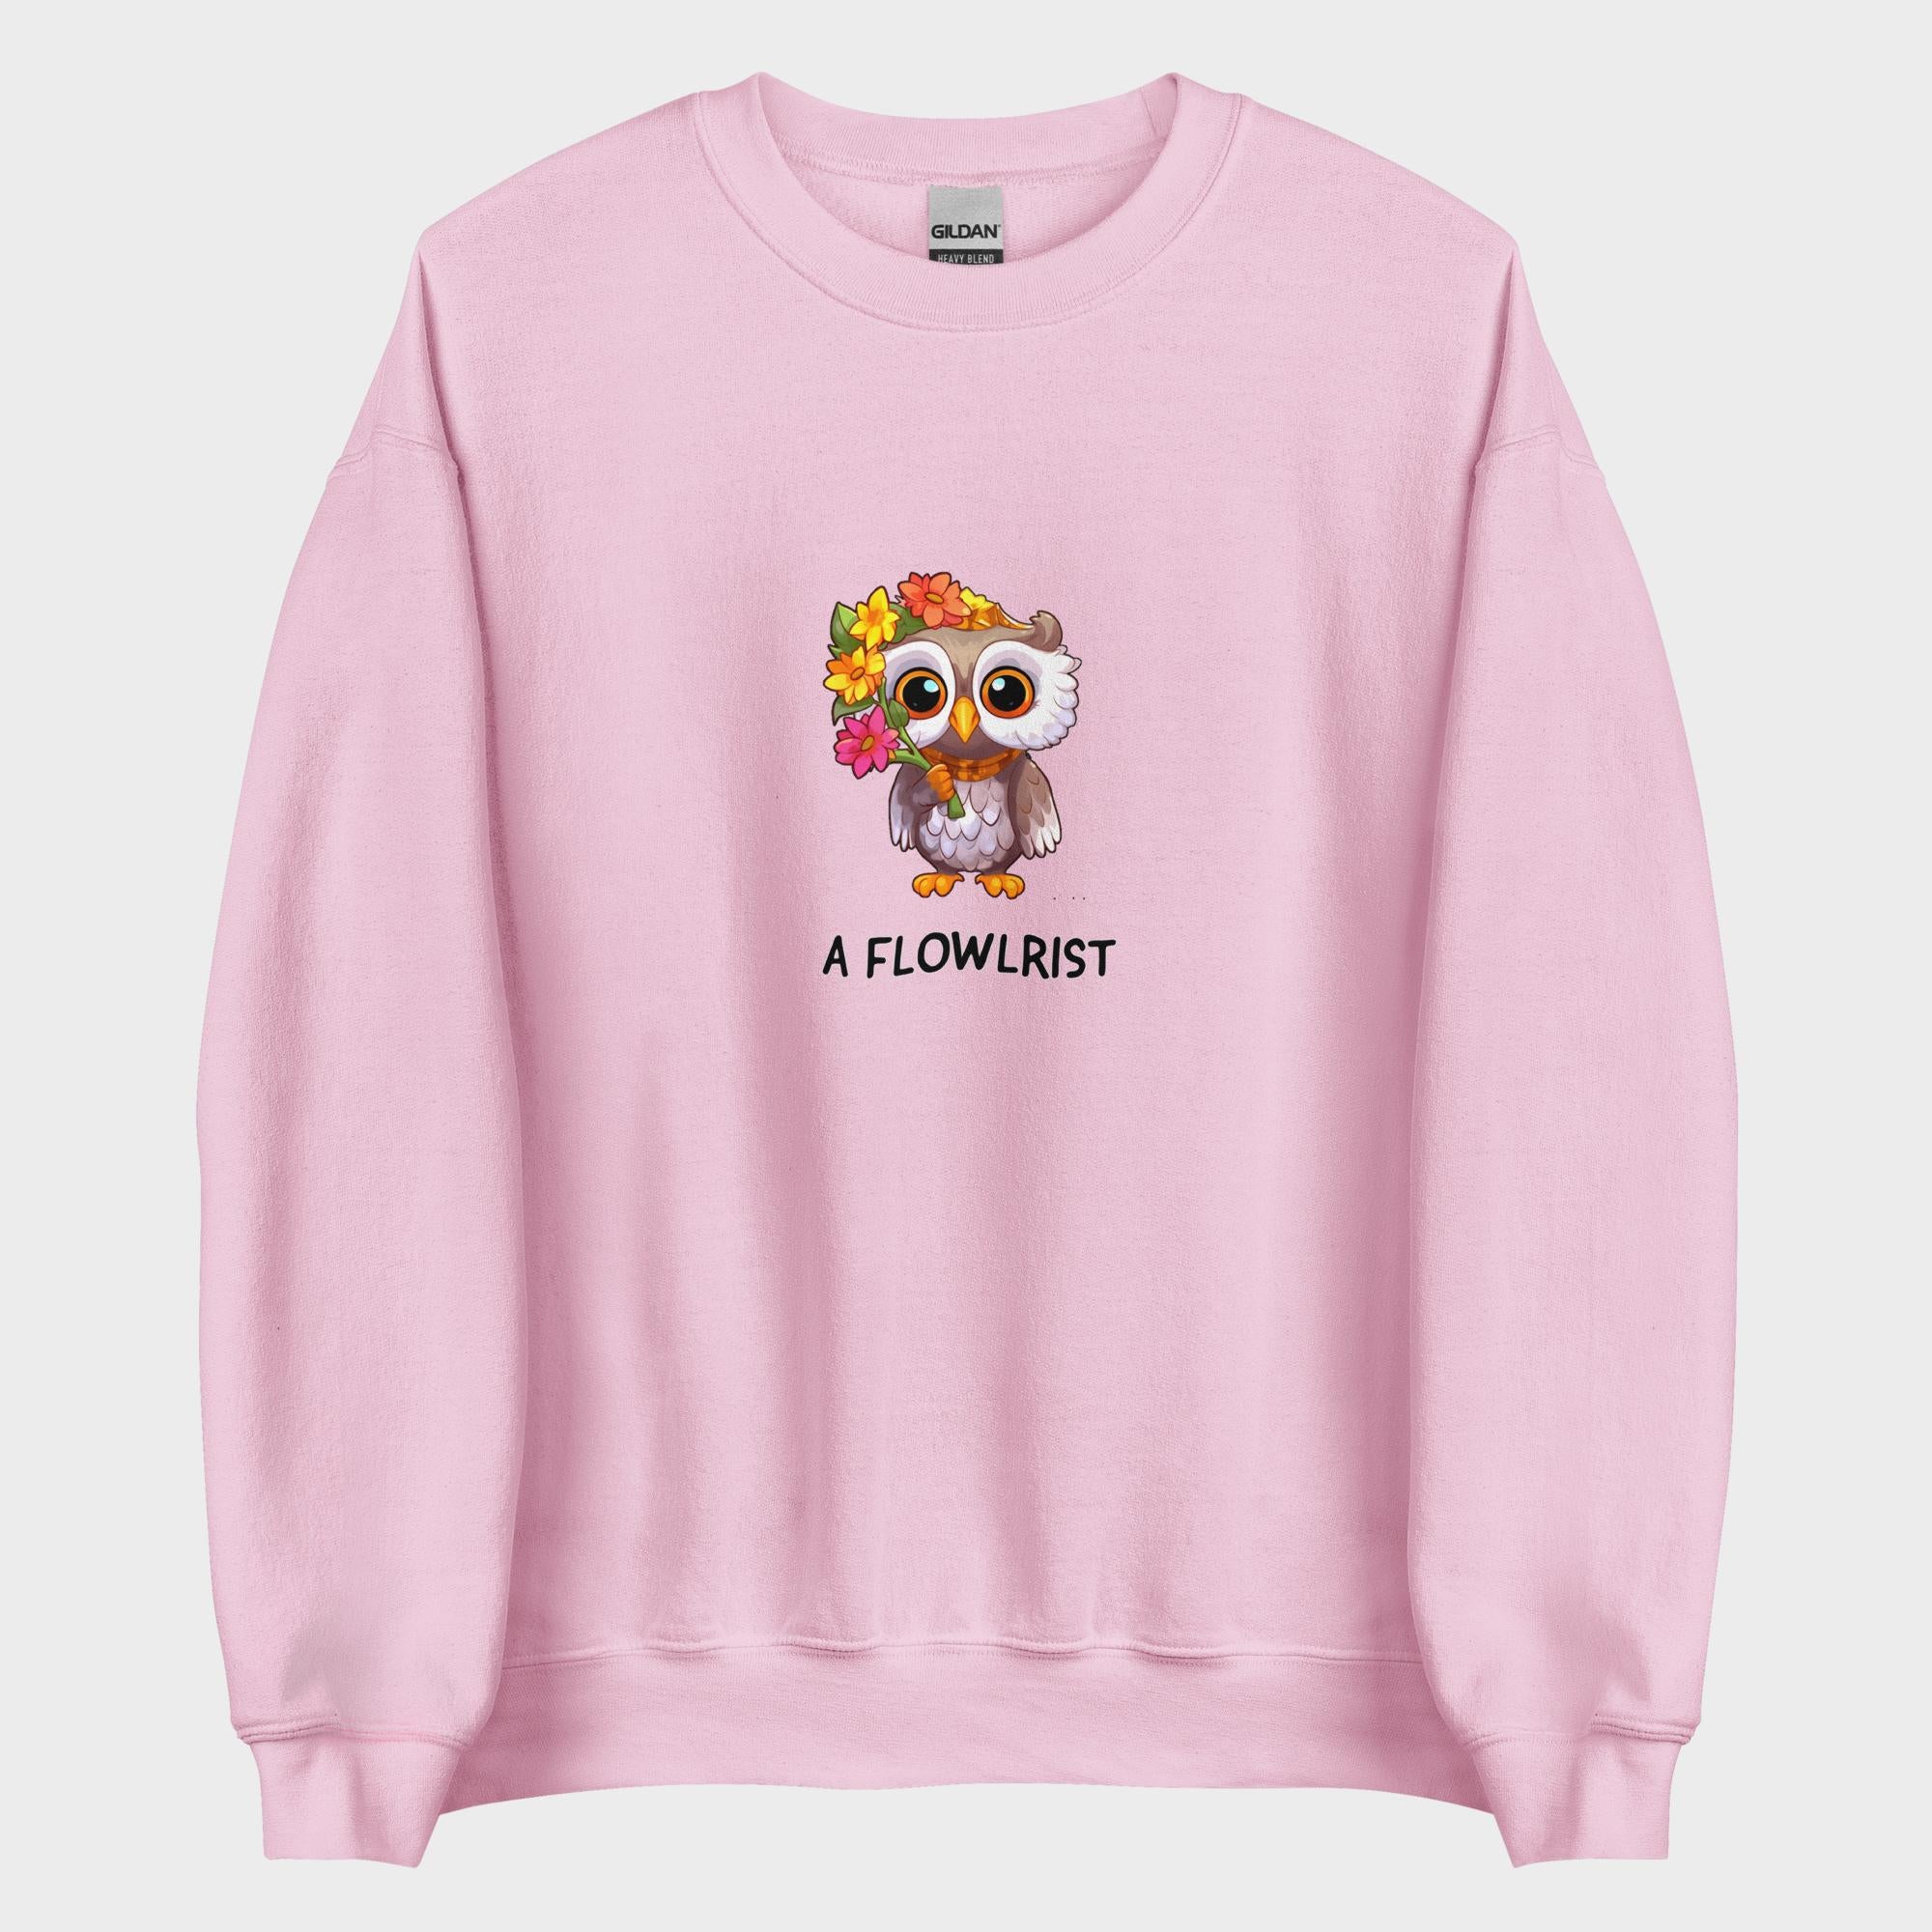 A Flowlrist - Sweatshirt